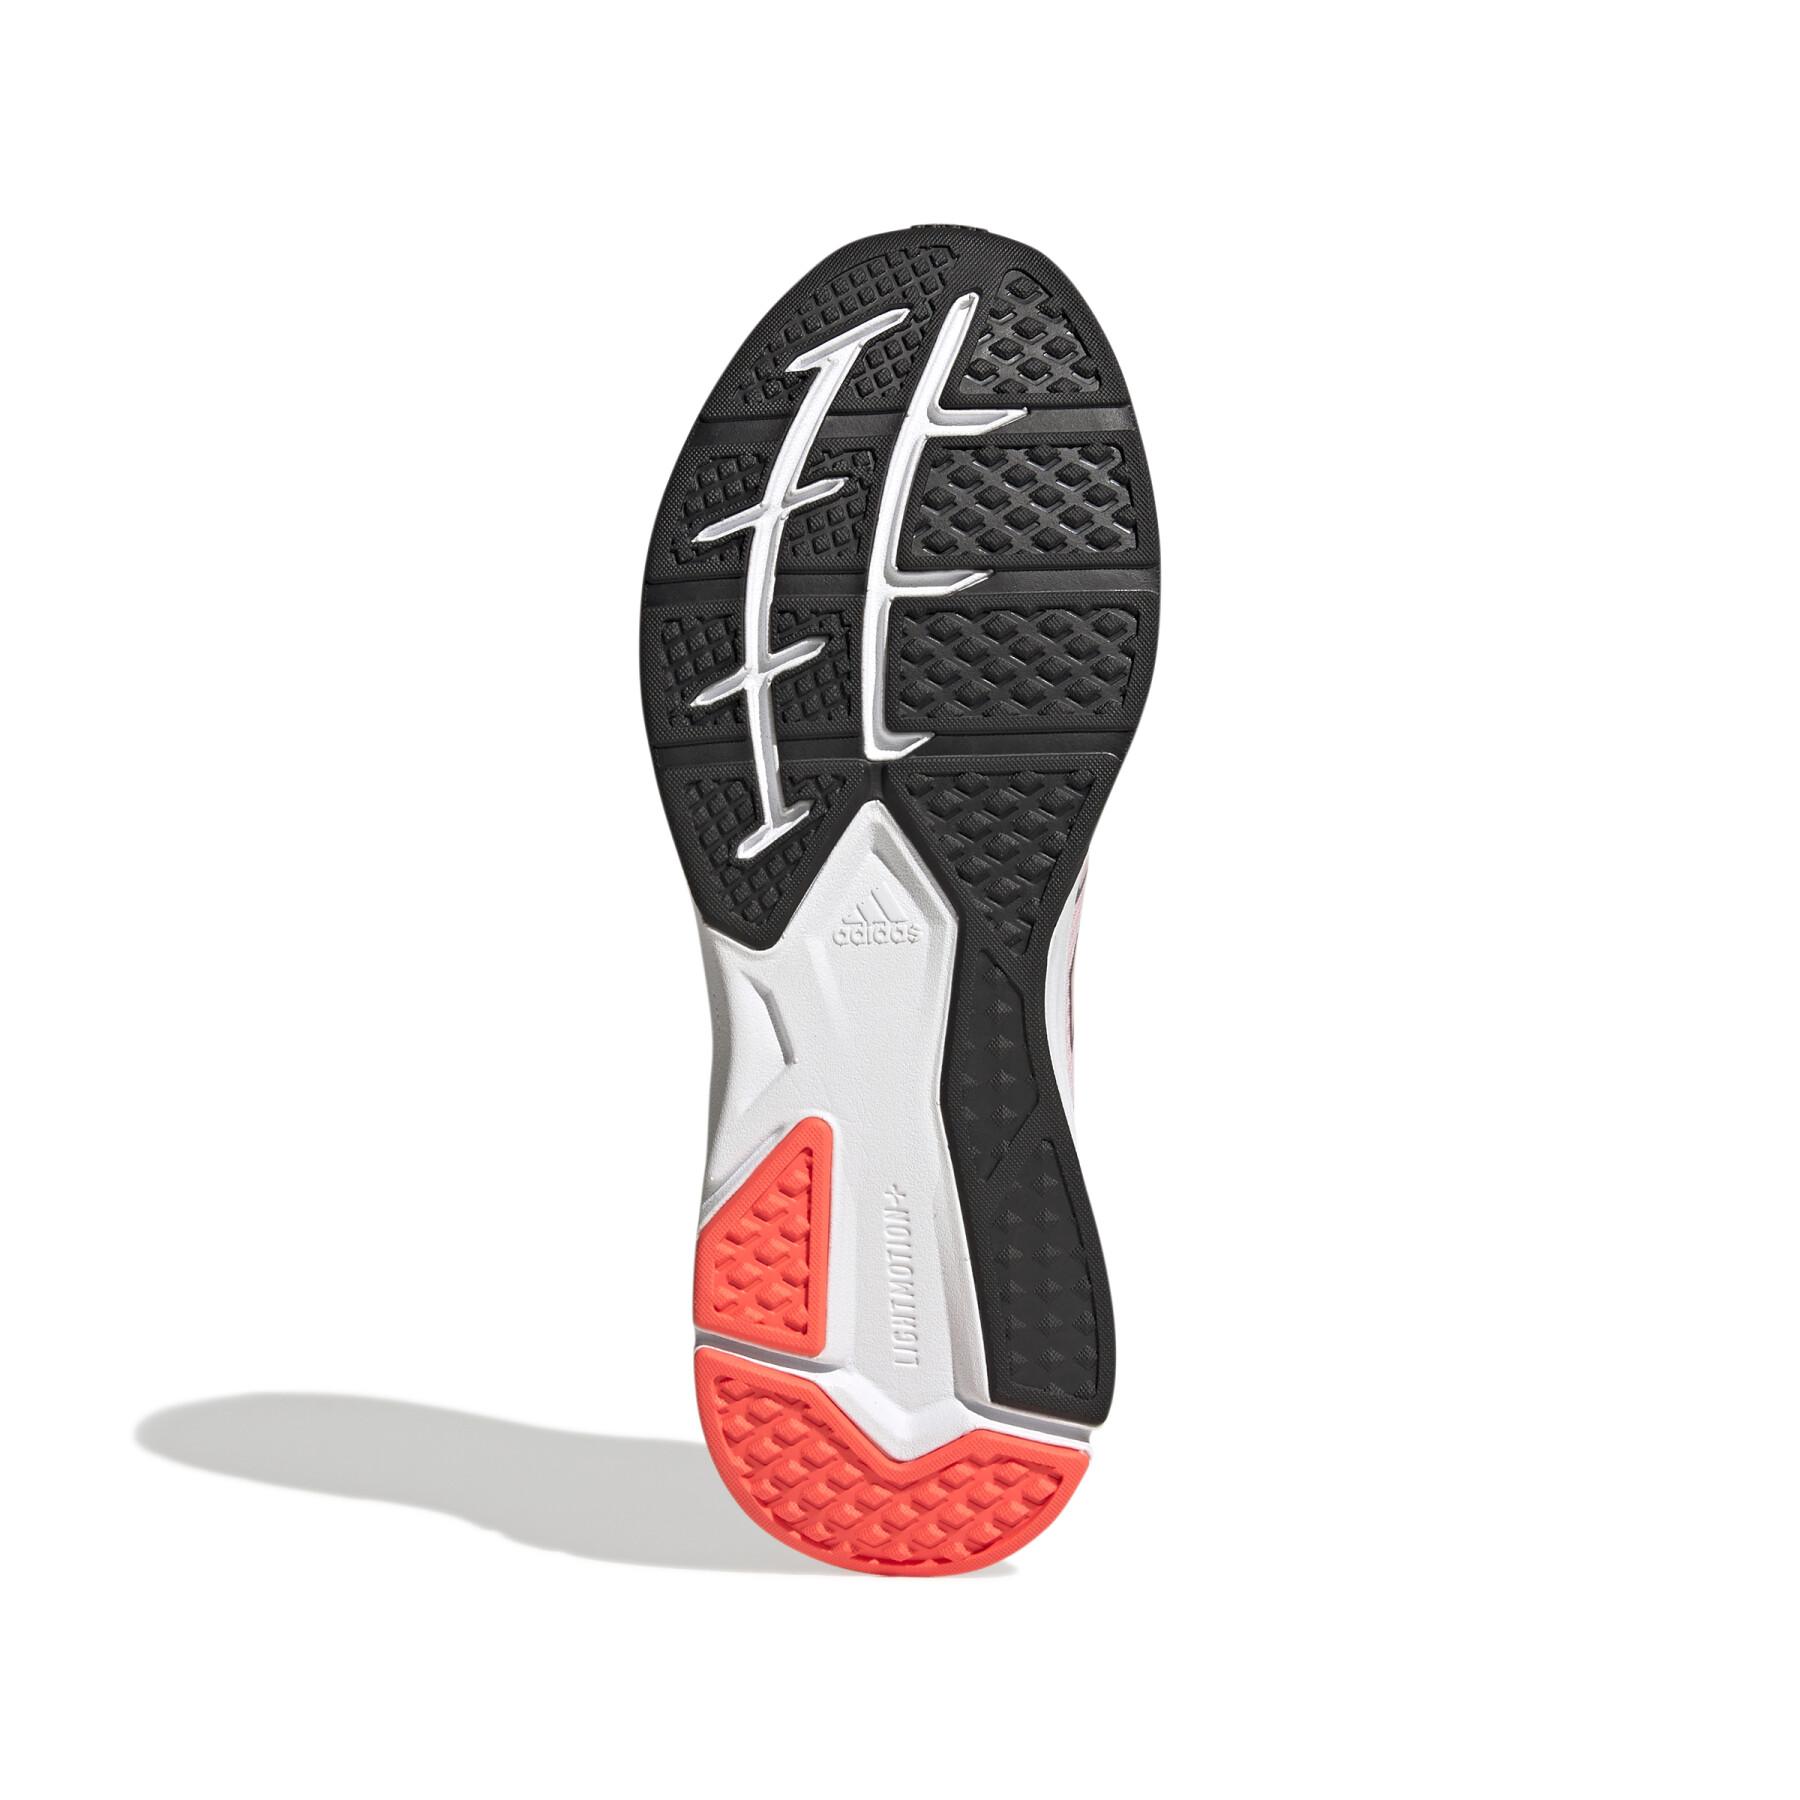 Trailrunning-Schuhe für Frauen adidas Speedmotion